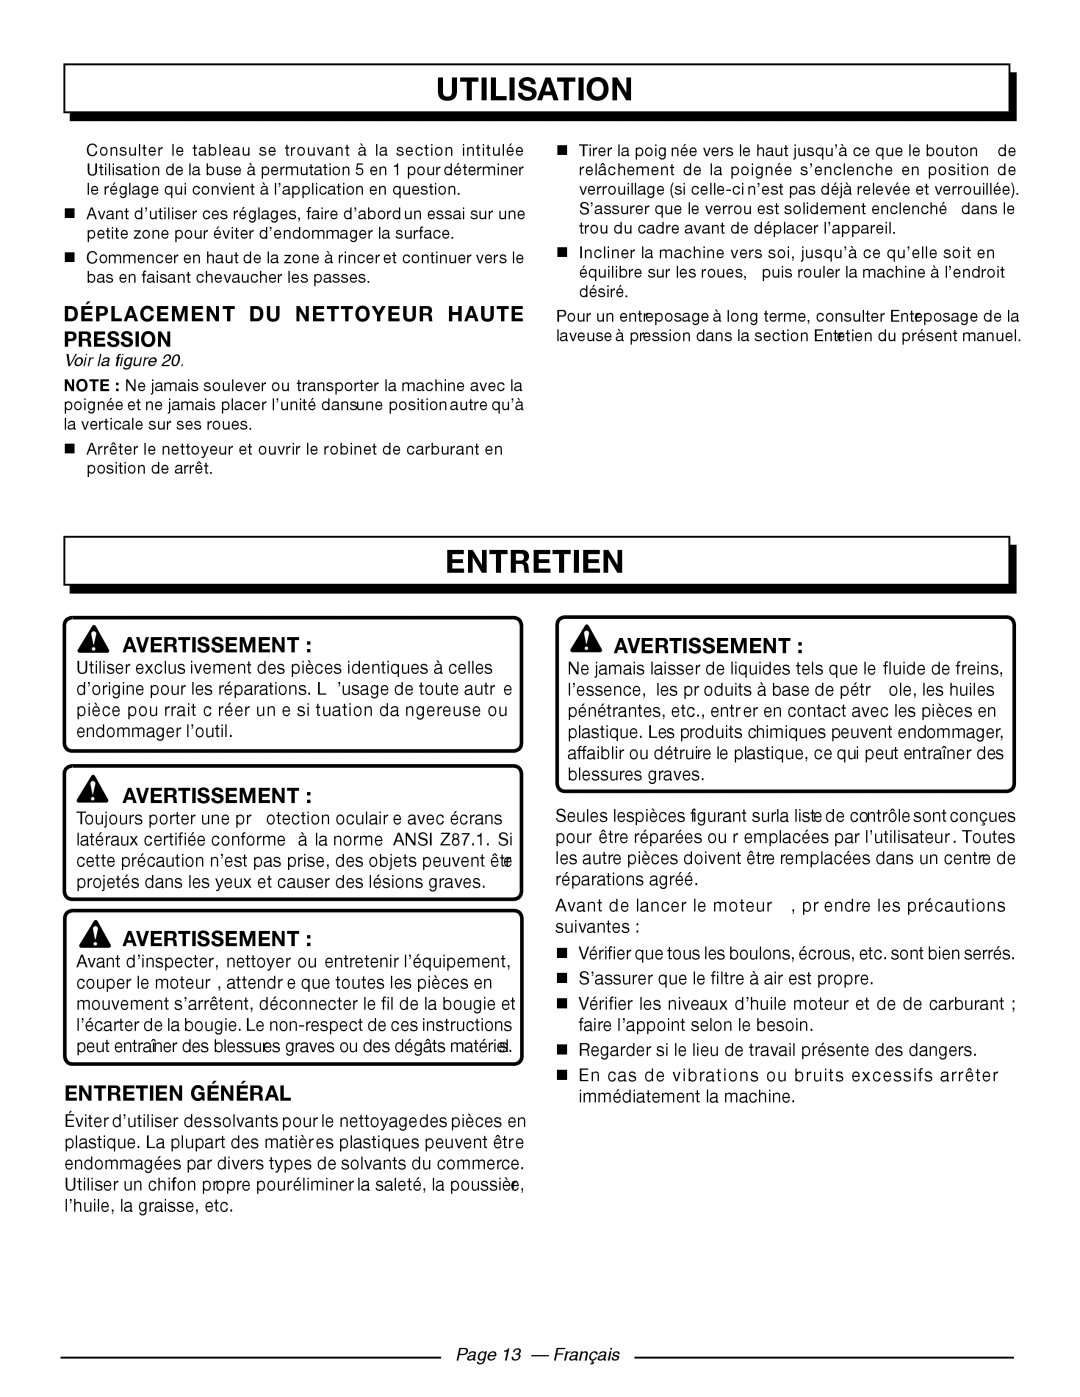 Homelite UT80911, UT80709 Déplacement Du Nettoyeur Haute Pression, Entretien Général, Utilisation, Avertissement 